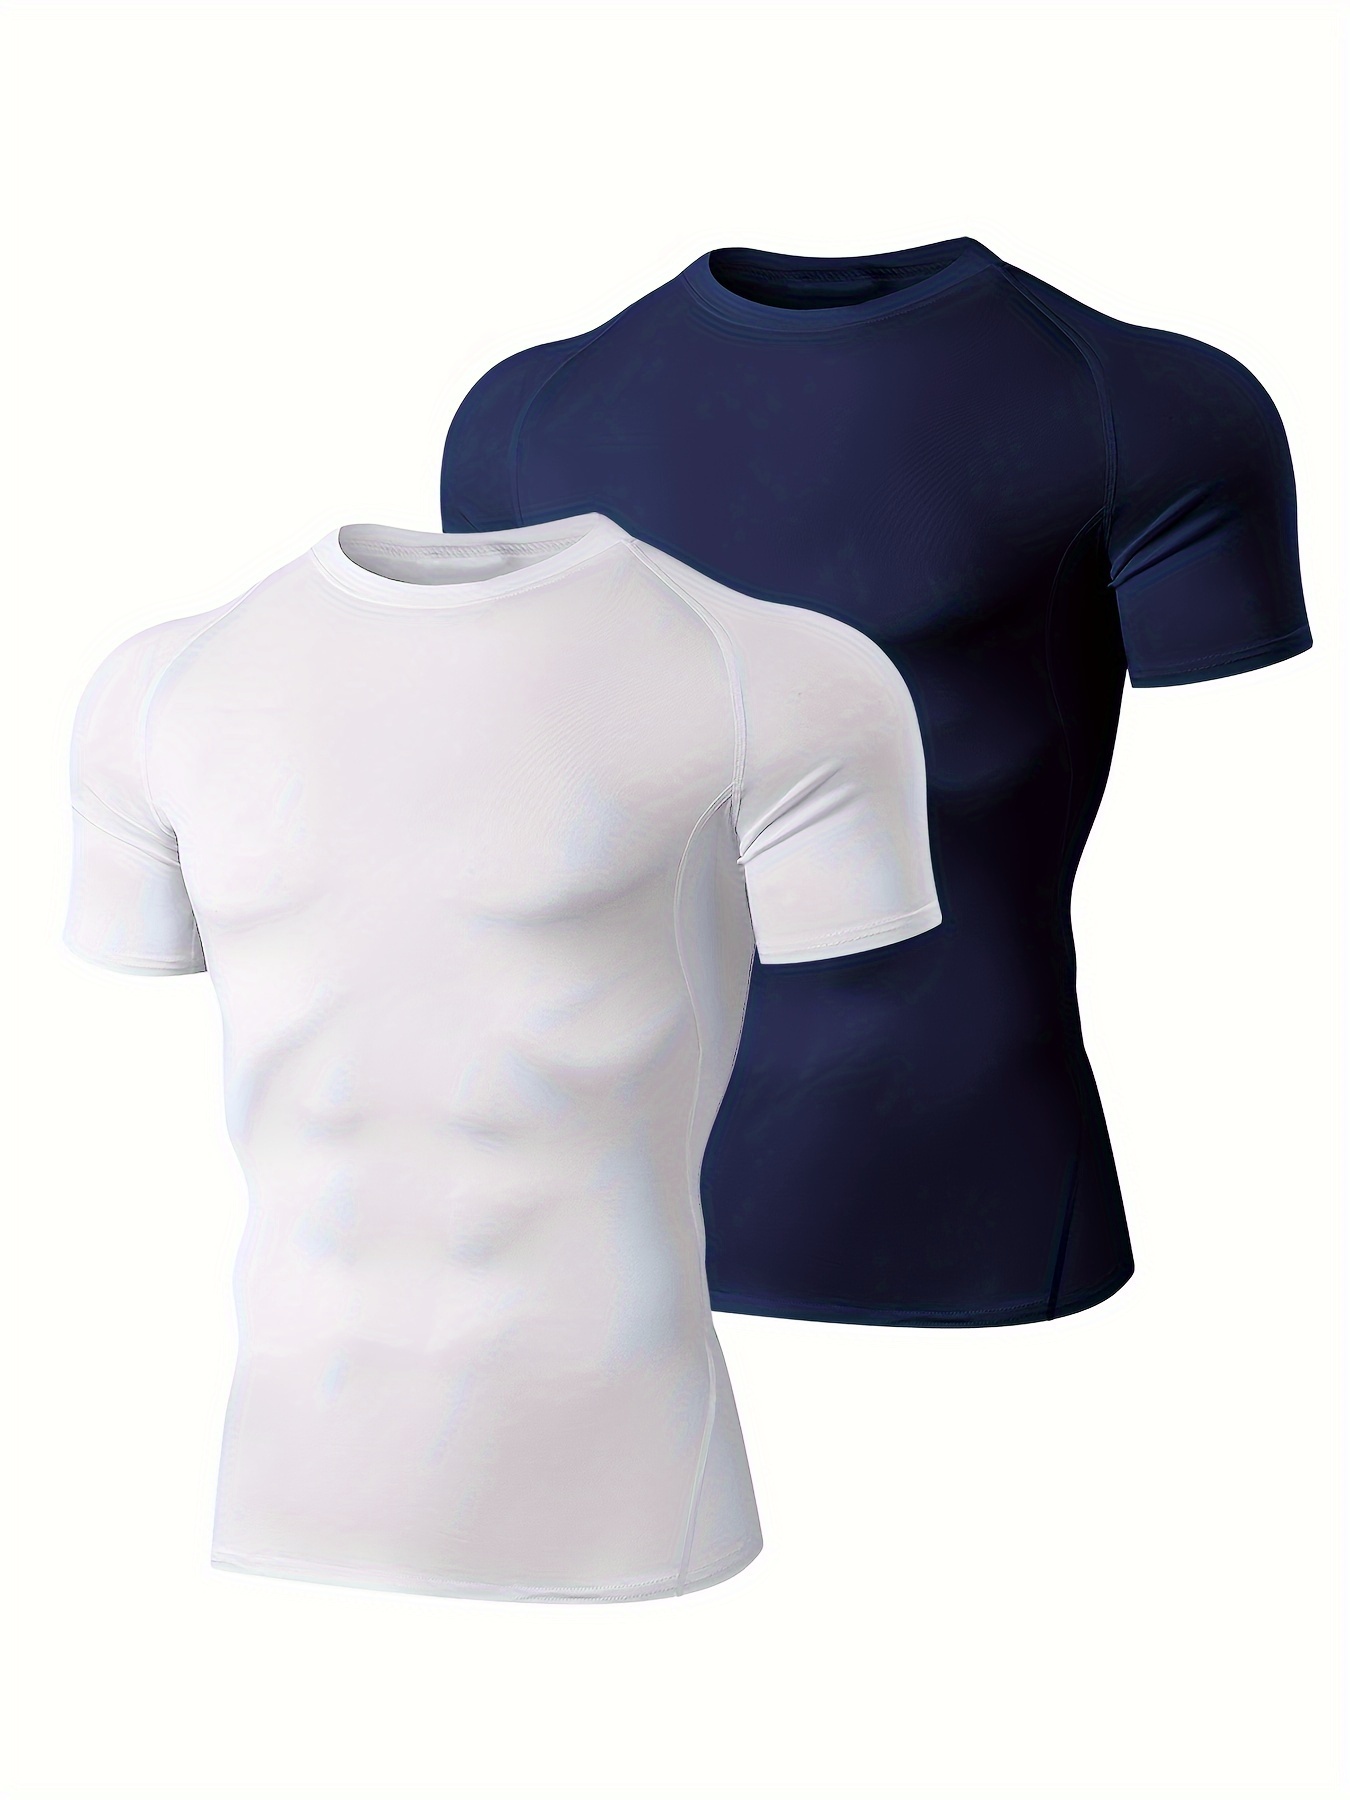 Camisas de compresión para hombre, camisas de compresión de manga corta  para hombre, camisetas de compresión de manga corta para entrenamiento